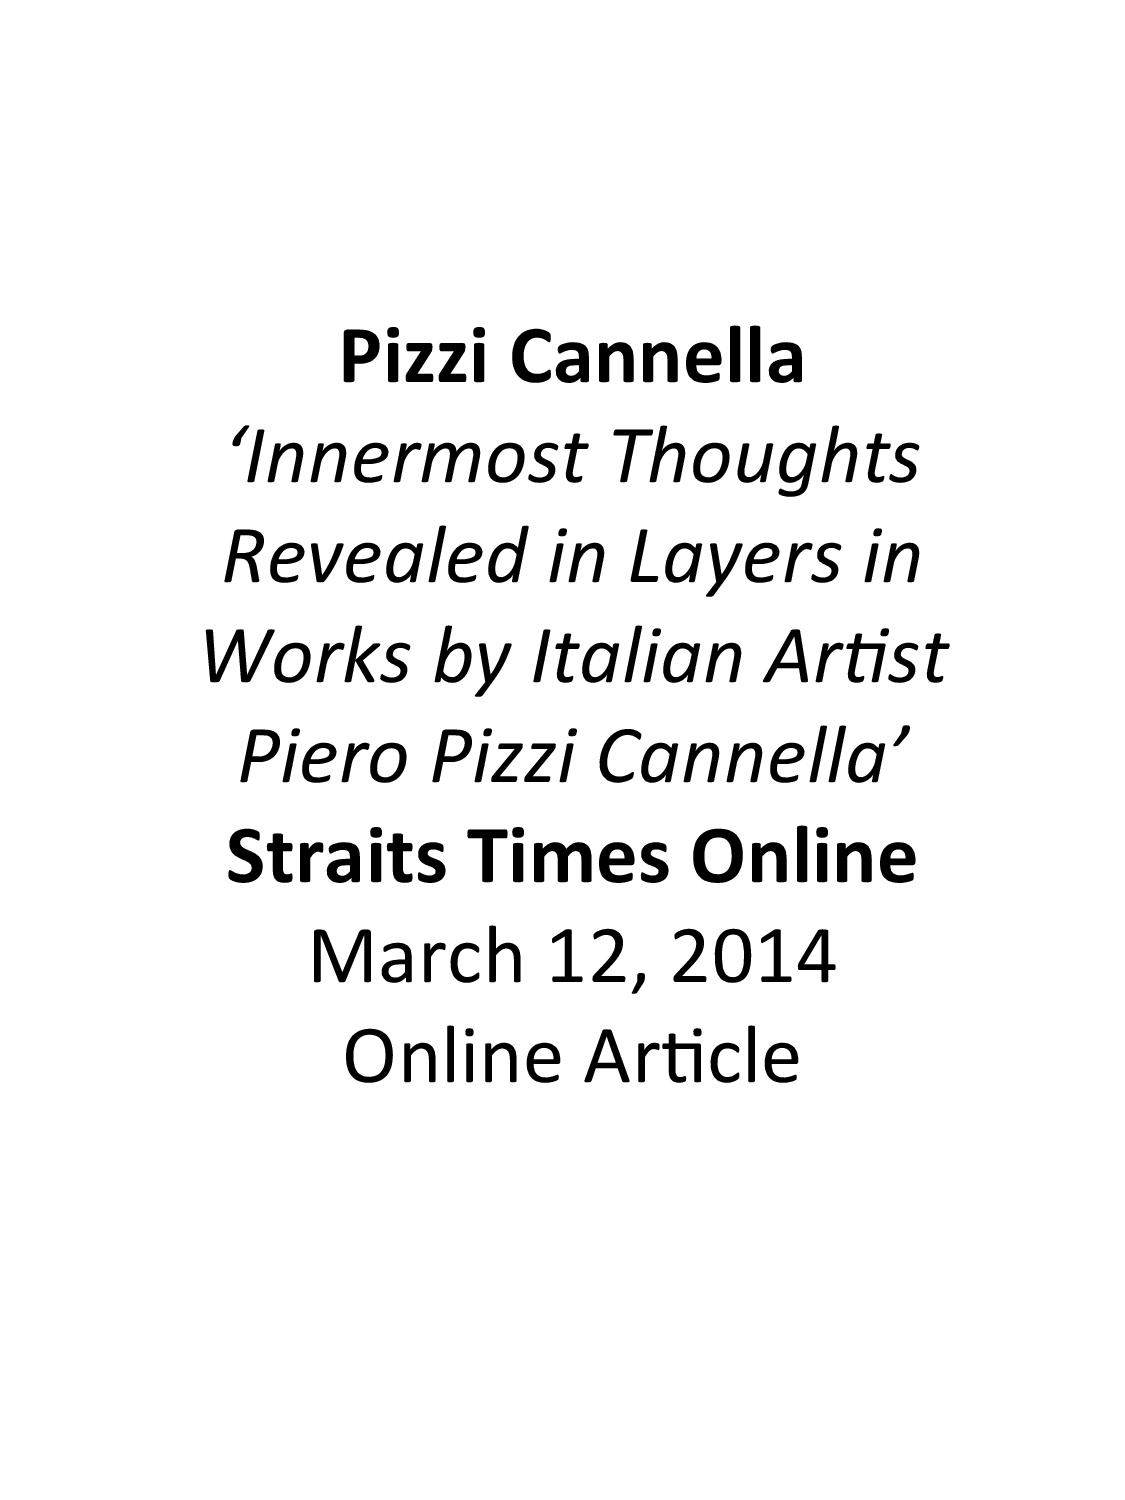 Press - Piero Pizzi Cannella | Media Coverage